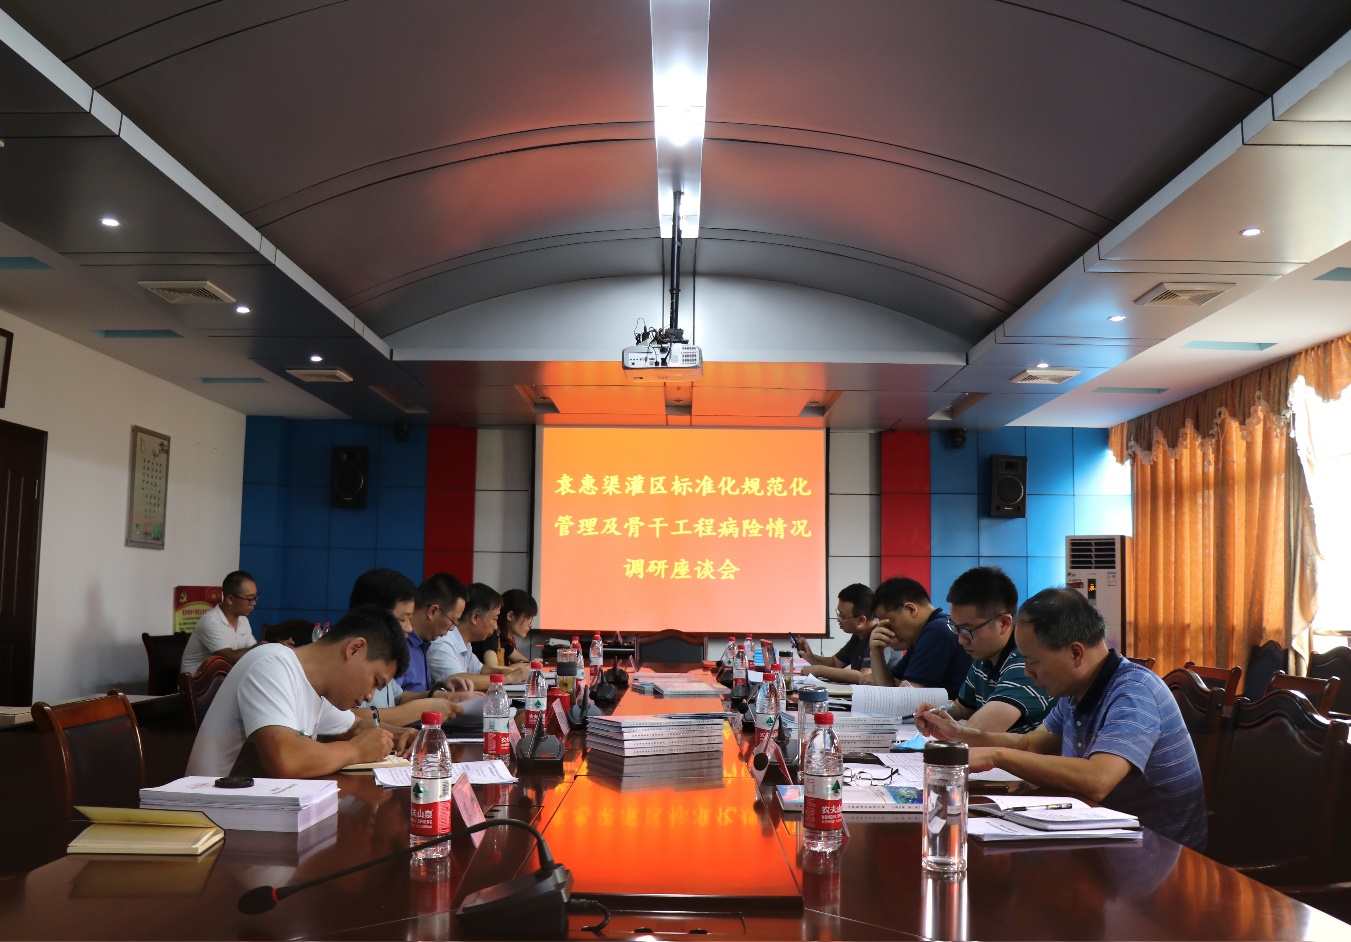 水利部调研组对袁惠渠灌区标准化规范化管理开展调研